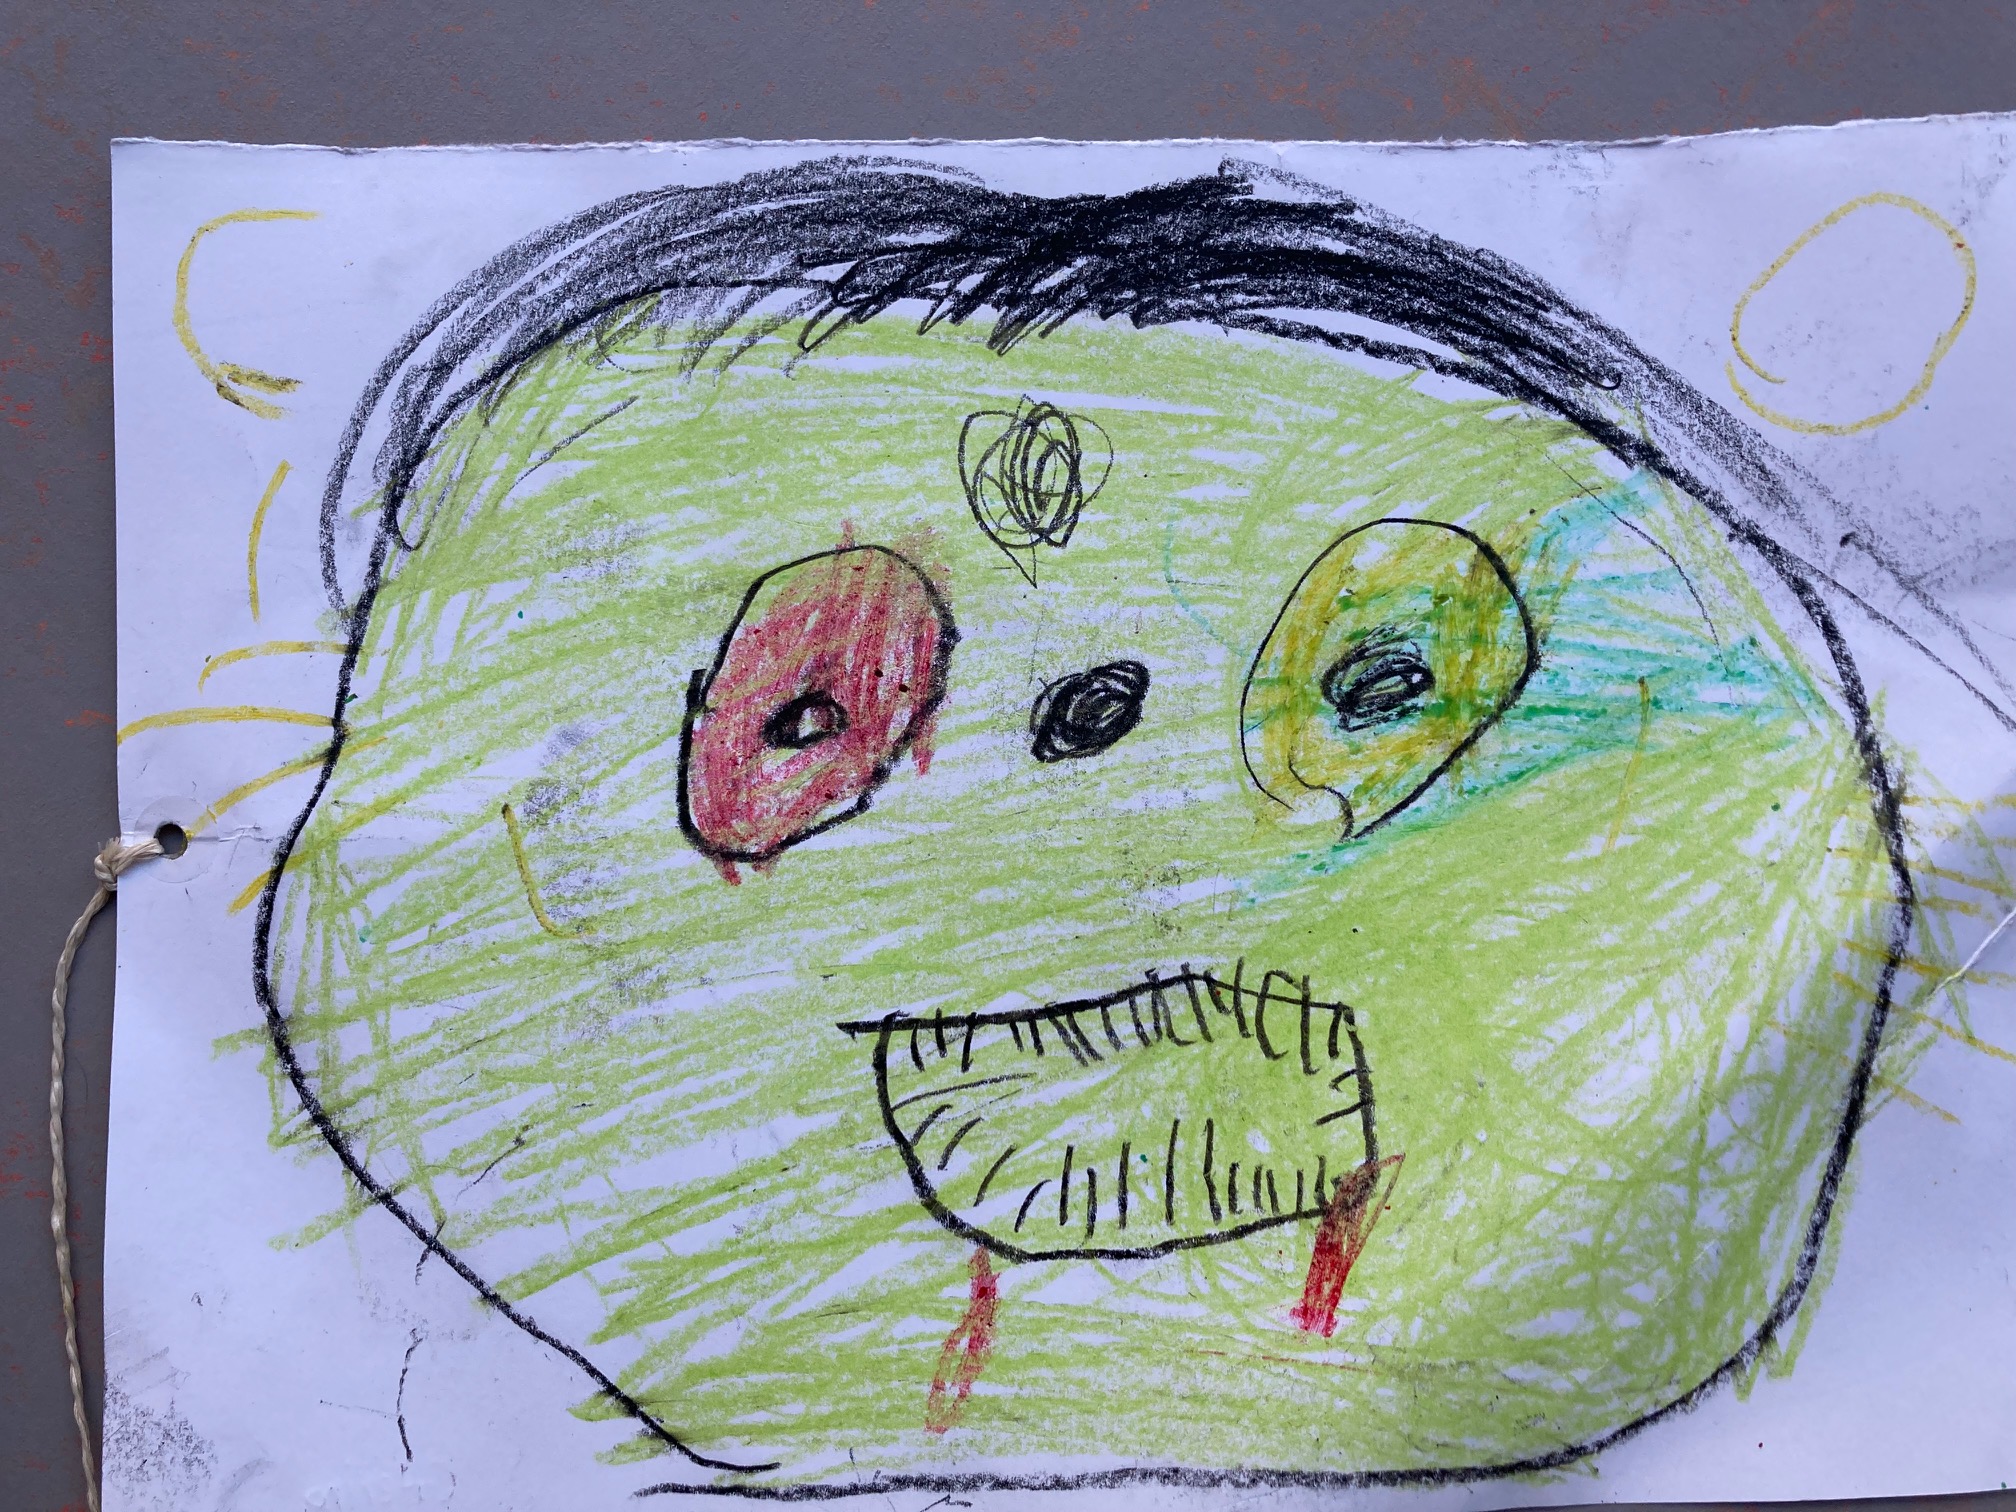 auf einem weißen Blatt sieht man ein grünes Gesiht mit einem roten und einem grünen Auge. Der Mund ist als rundliche Öffnung mit vielen kleinen Strichen, die Zähne andeuten, zu sehen. Die Nase ist ein schwarzer Punkt. es gibt außerdem schwarze kurze Haare